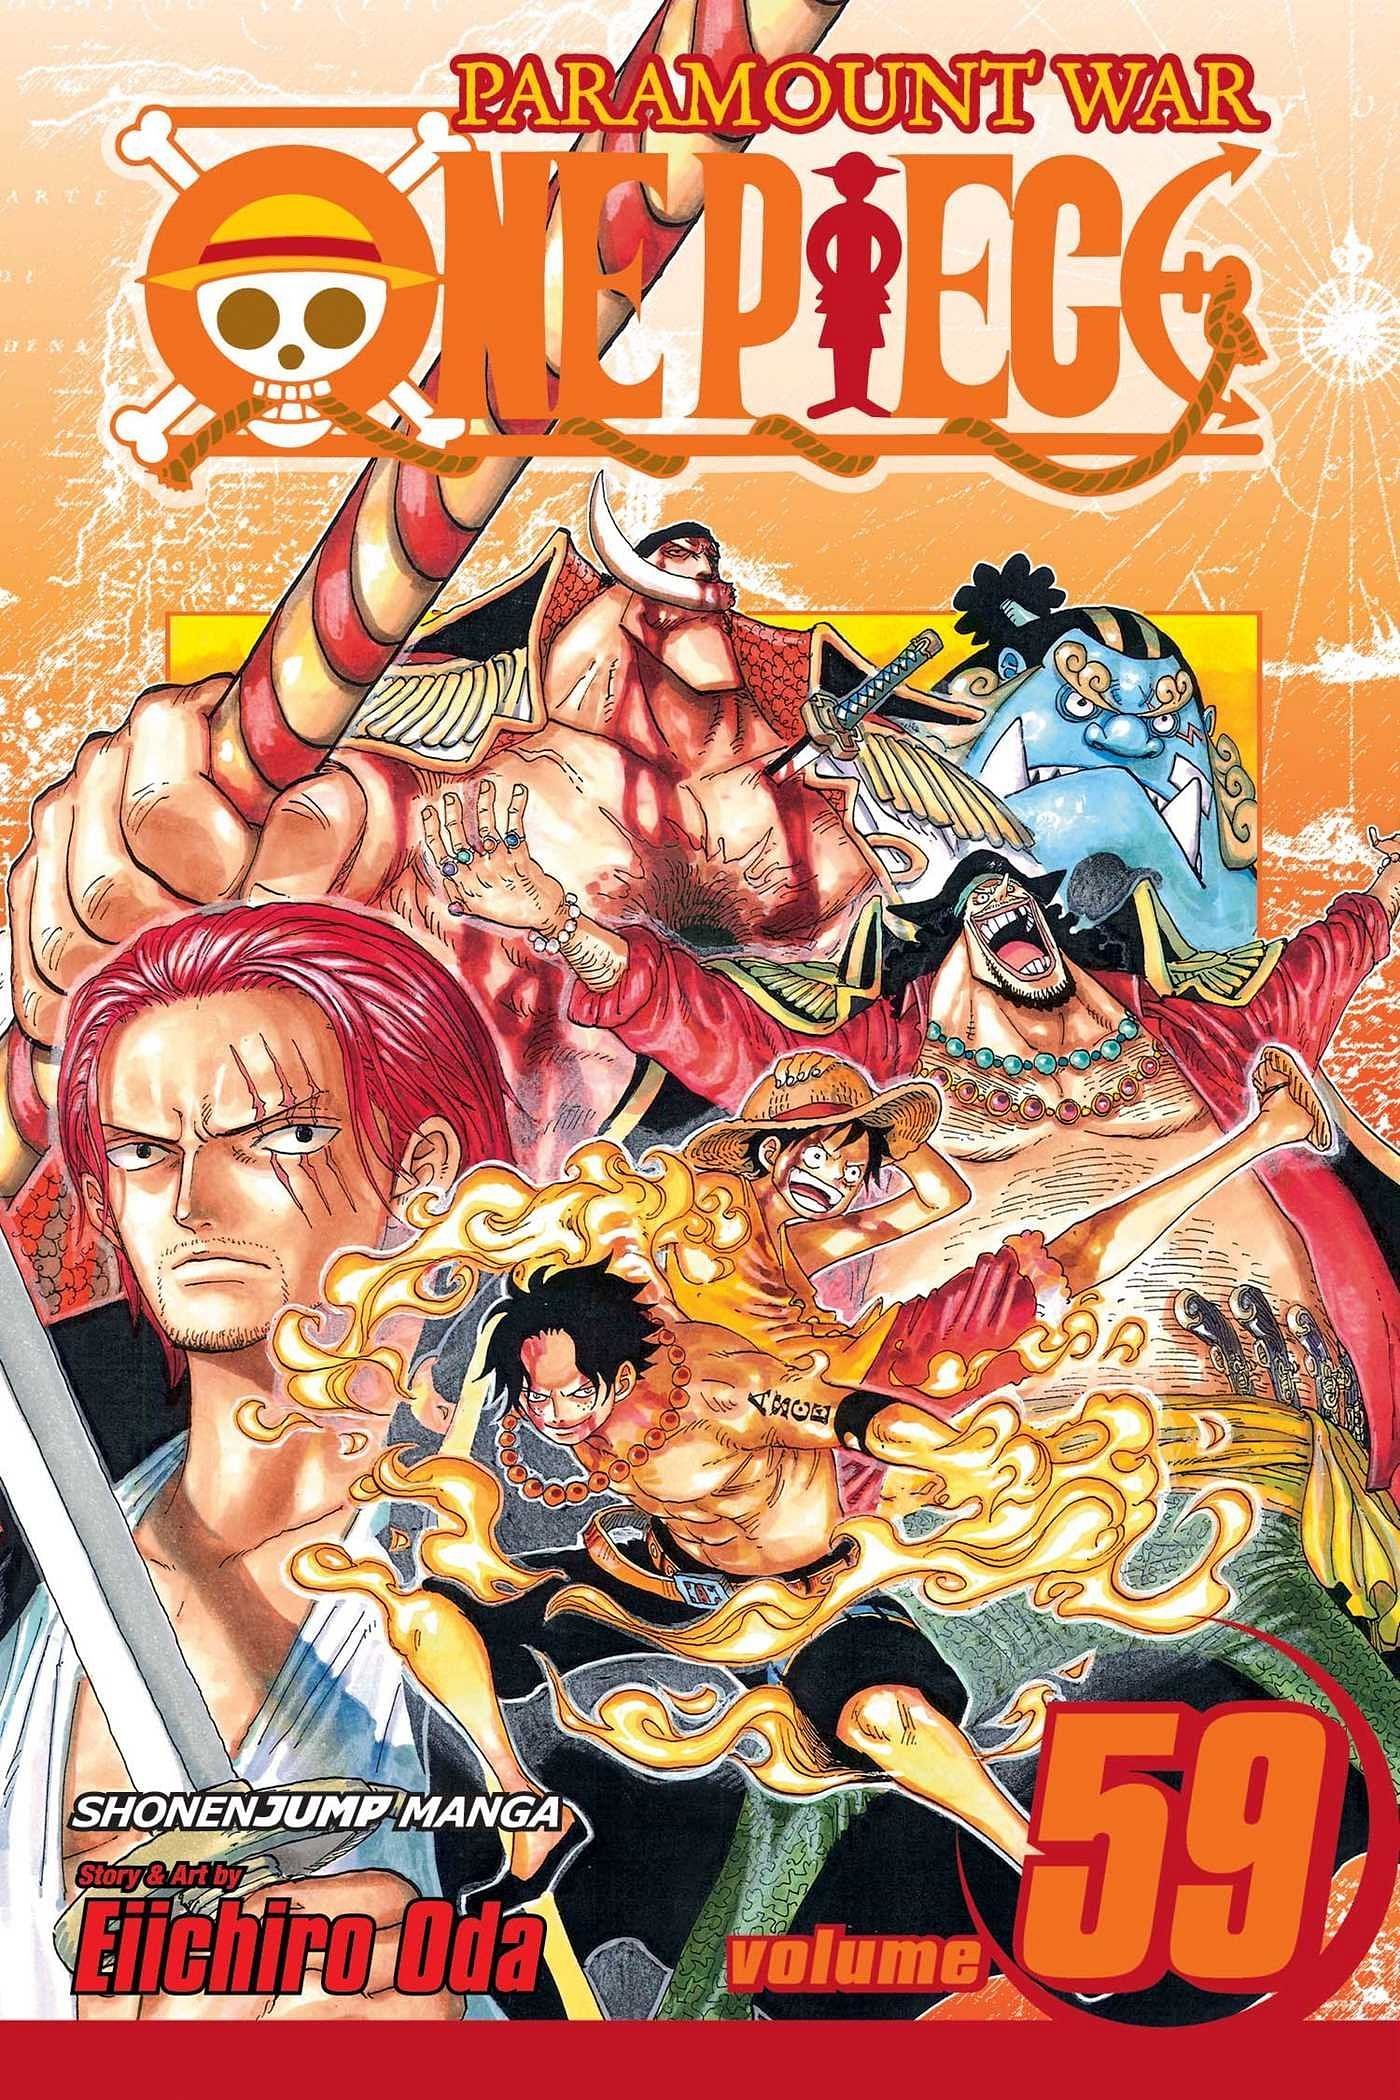 The cover art for One Piece Volume 59 (Image via Shueisha)